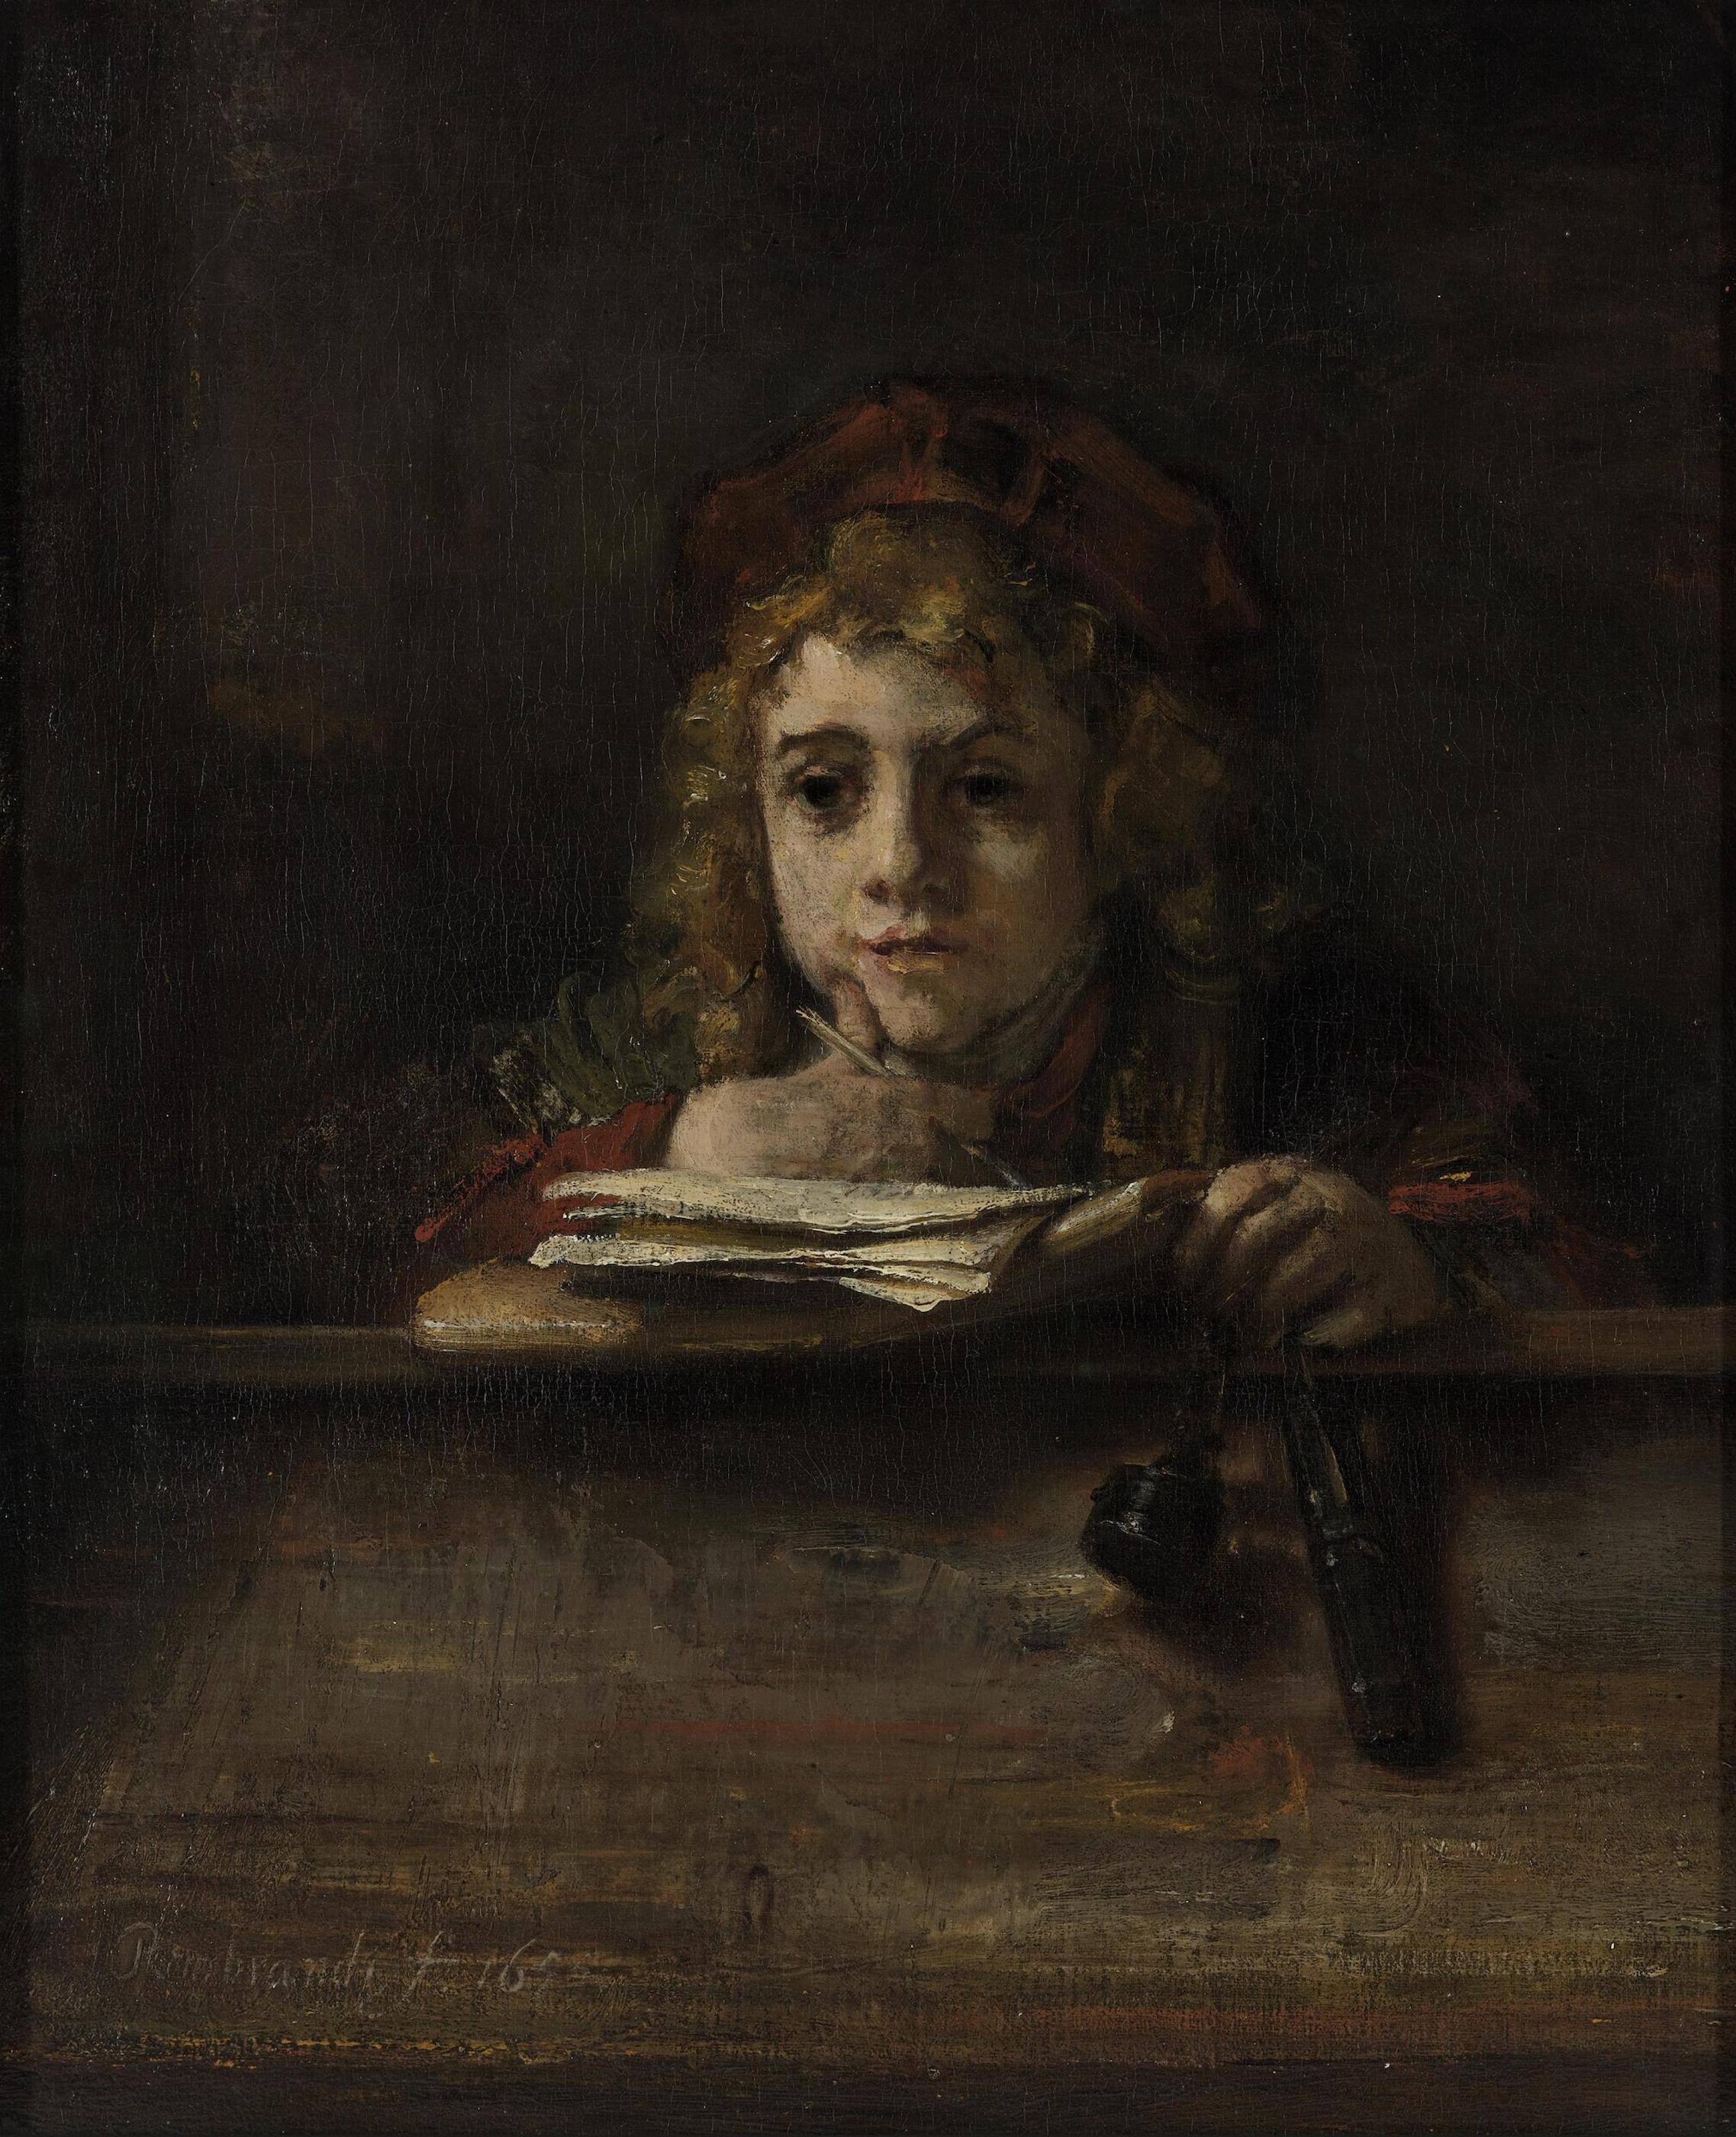 辦公桌前的泰特斯 by Rembrandt van Rijn - 1655 - 63 x 77 cm 